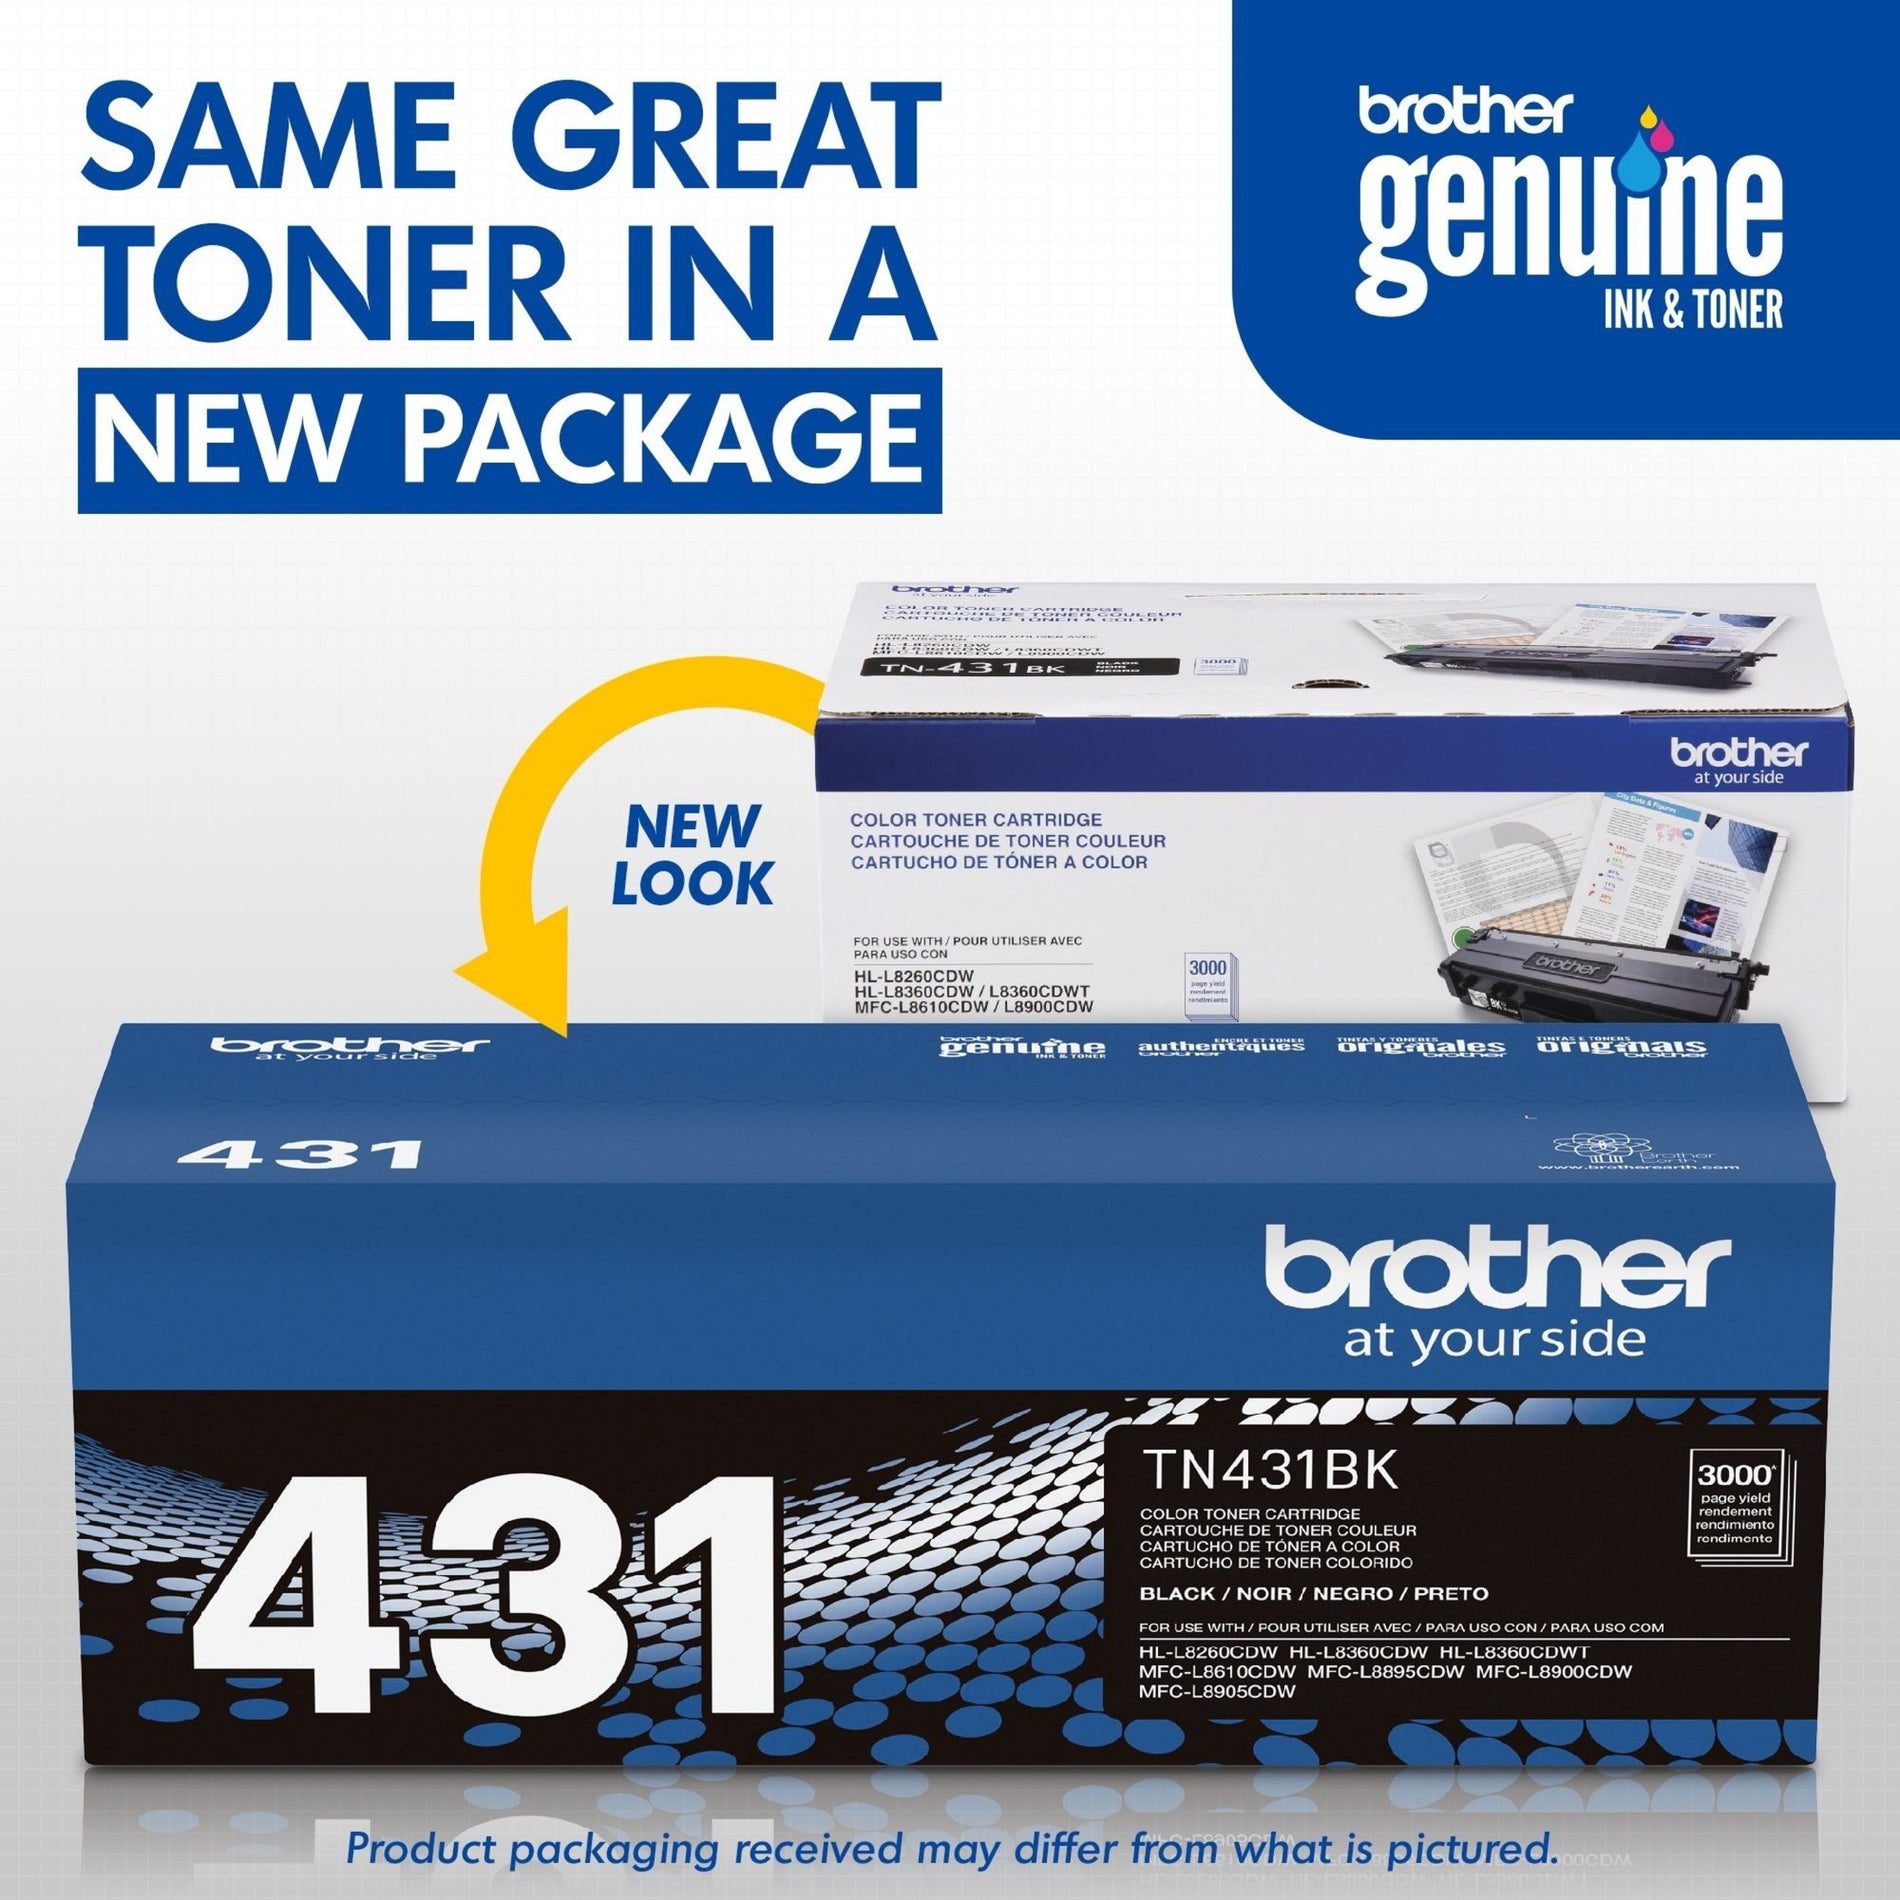 哥哥 TN431BK 墨盒 3000页标准产量 黑色 Brother. 哥哥 是品牌名称.